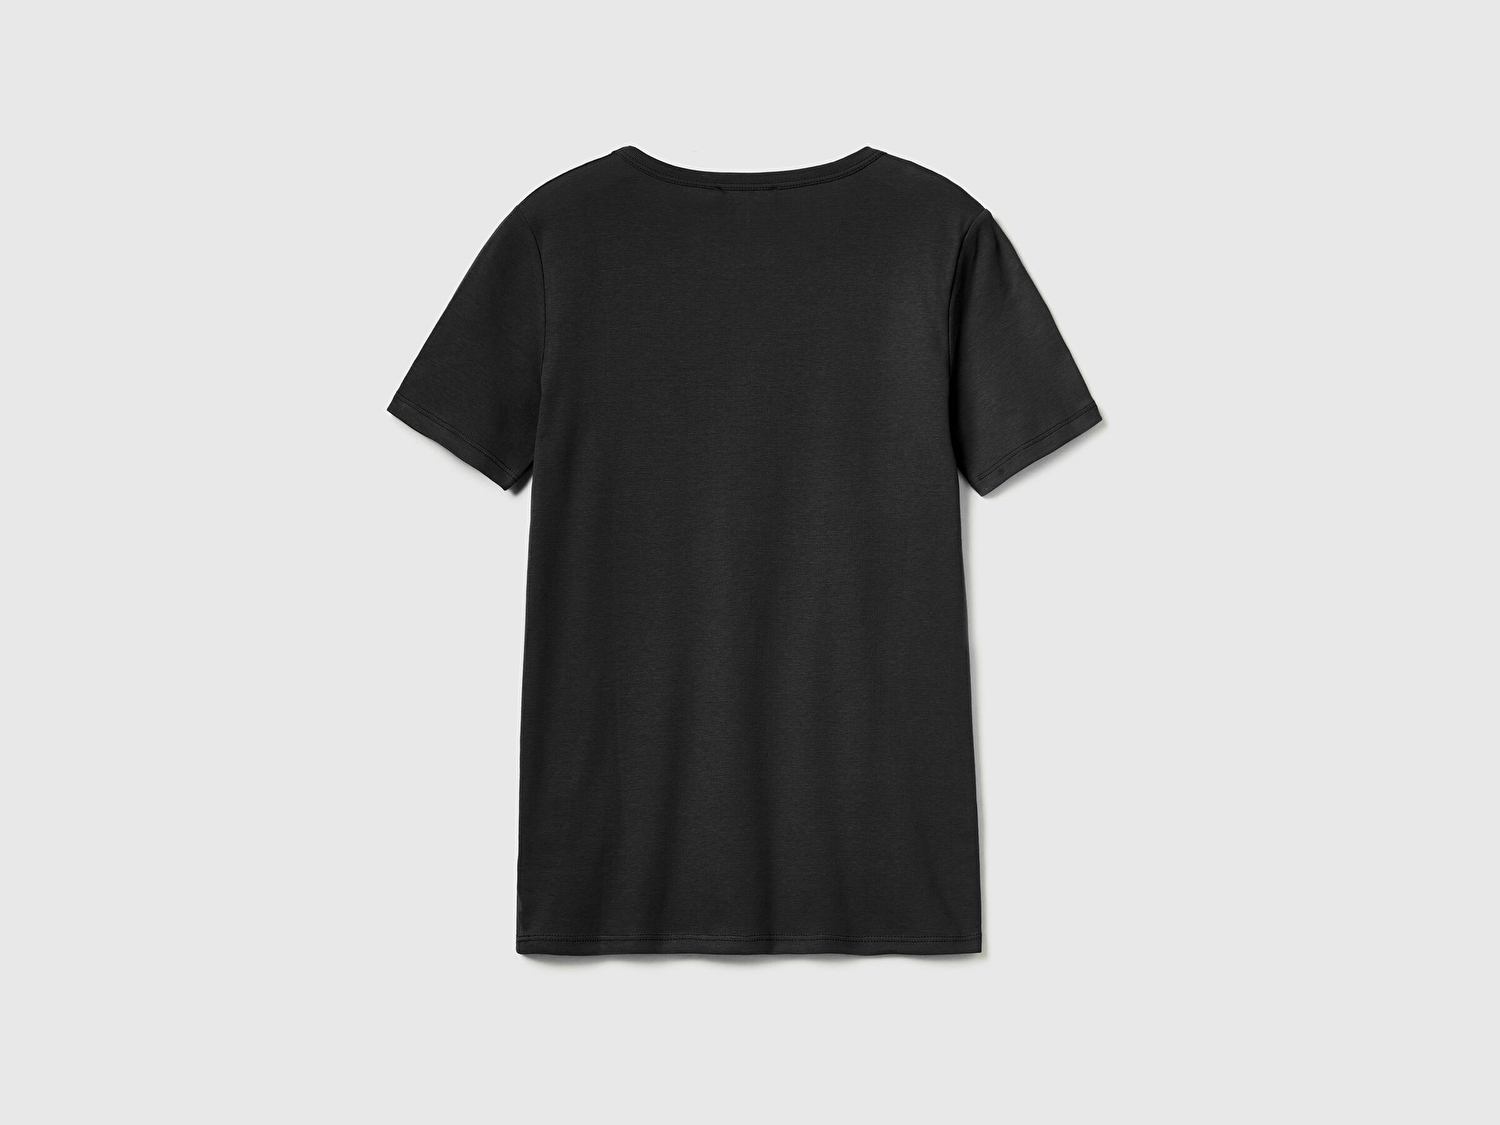 Benetton Kadın Siyah %100 Koton Benetton Yazılı Basic T-Shirt